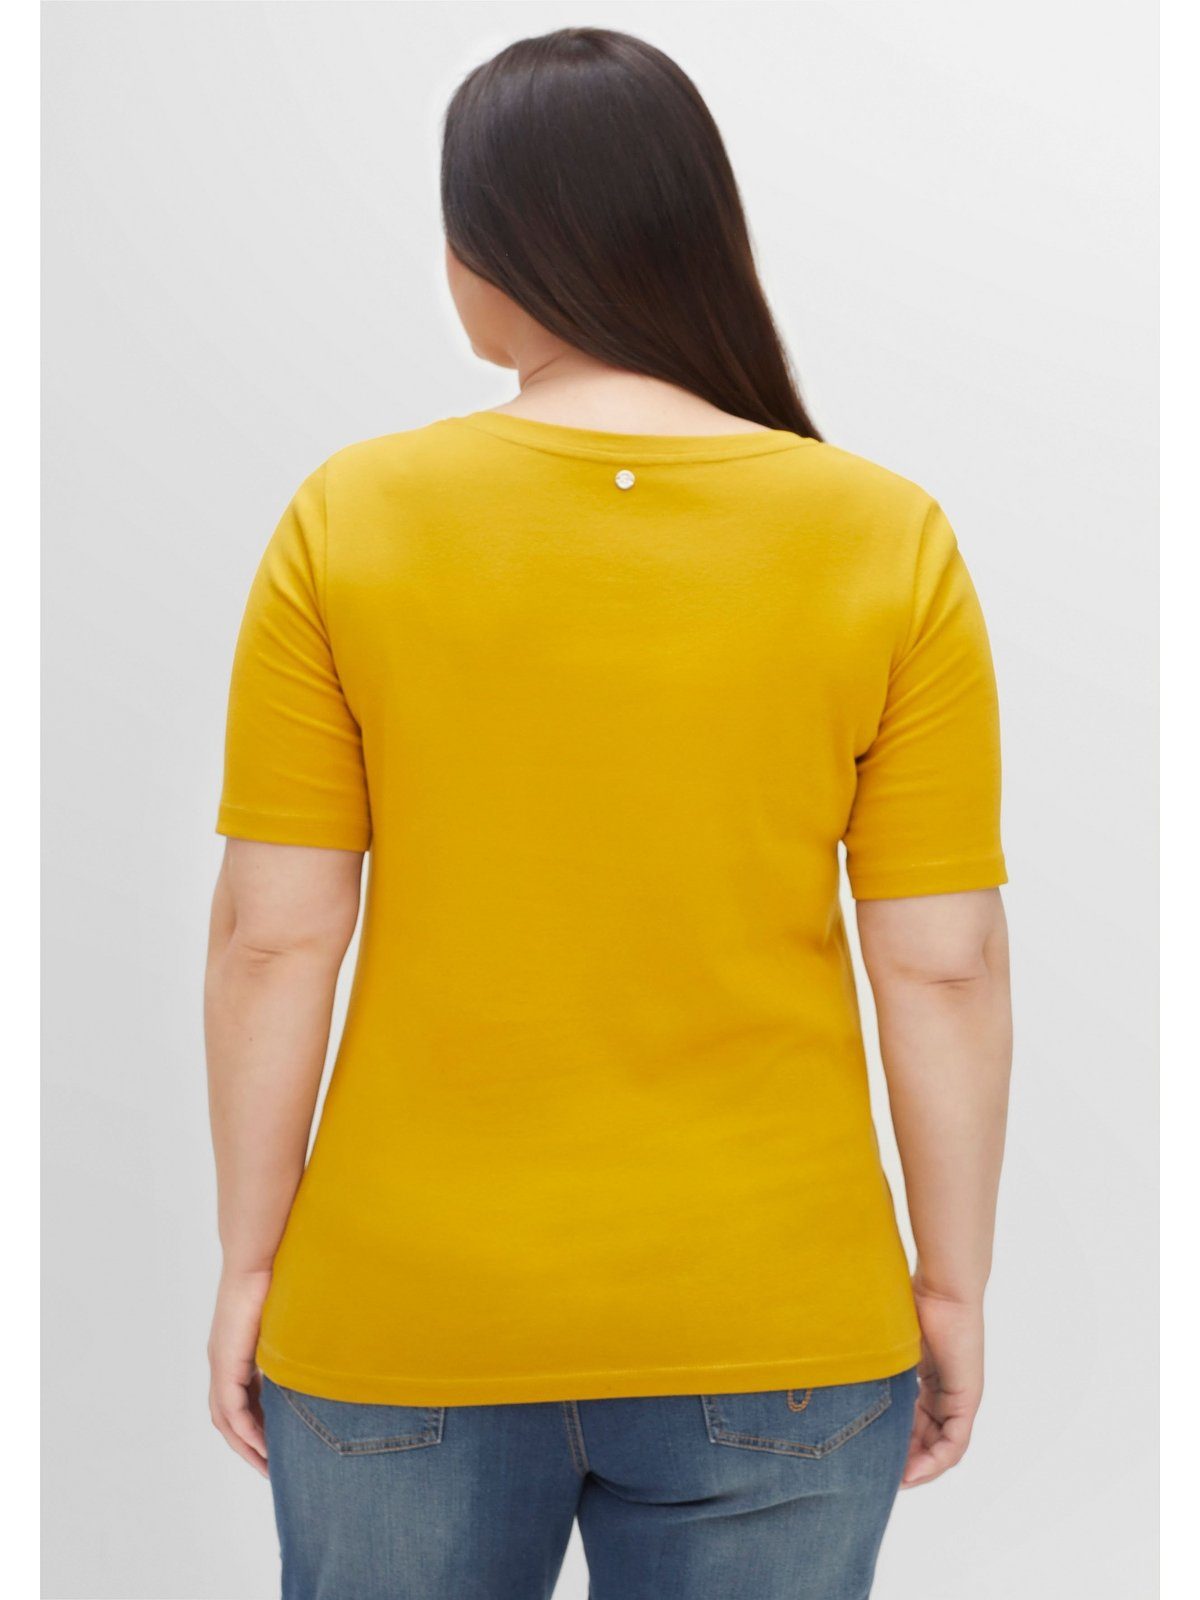 Sheego T-Shirt Große Größen in Rippstruktur, mit senfgelb Knopfleiste